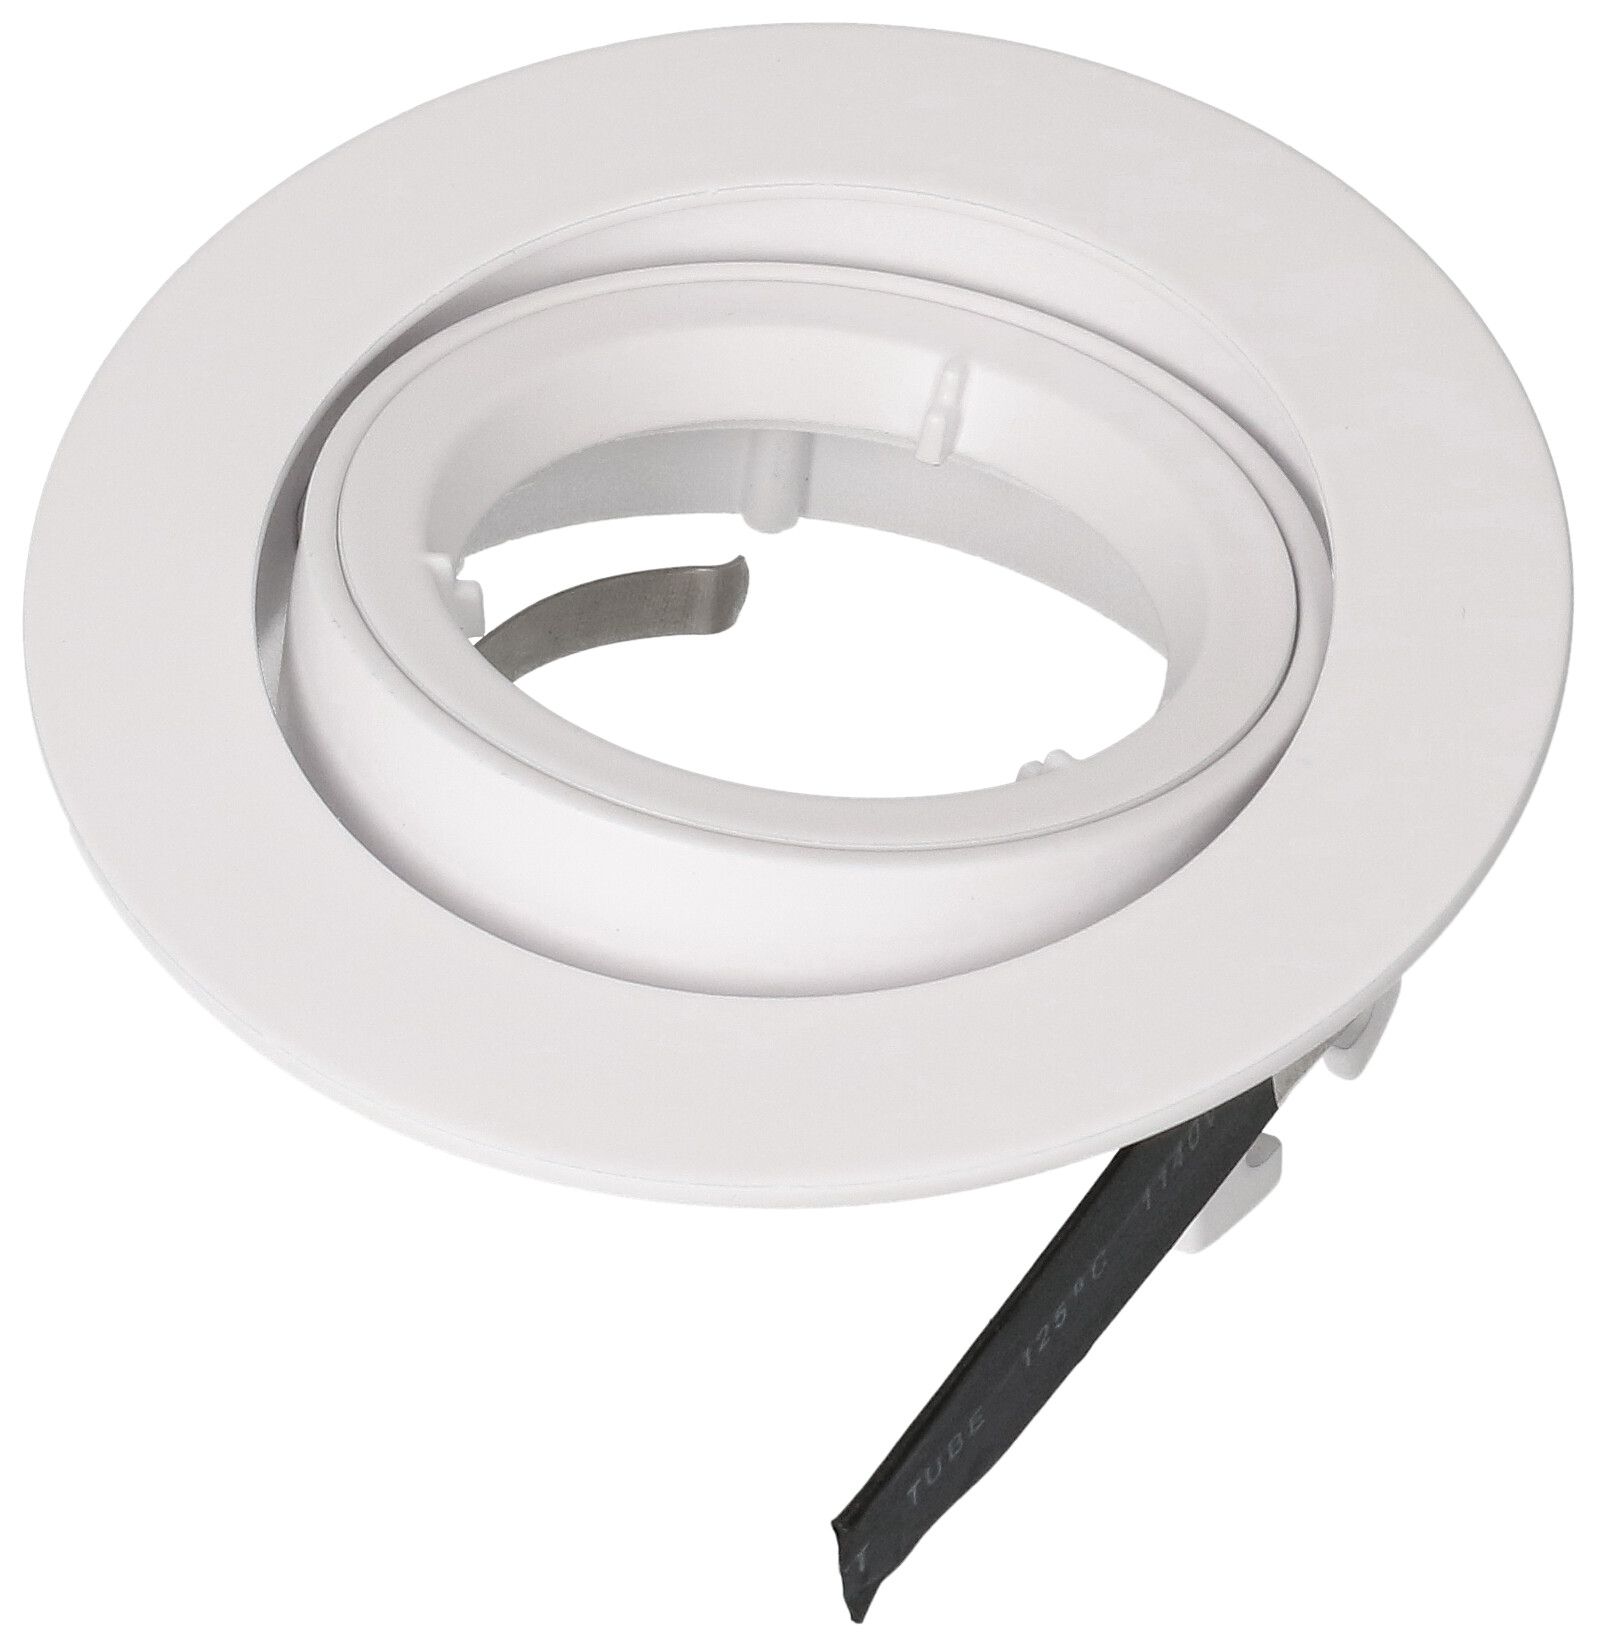 Cadre 80 blanc pour ampoules LED avec socle GU10/ressort à lame